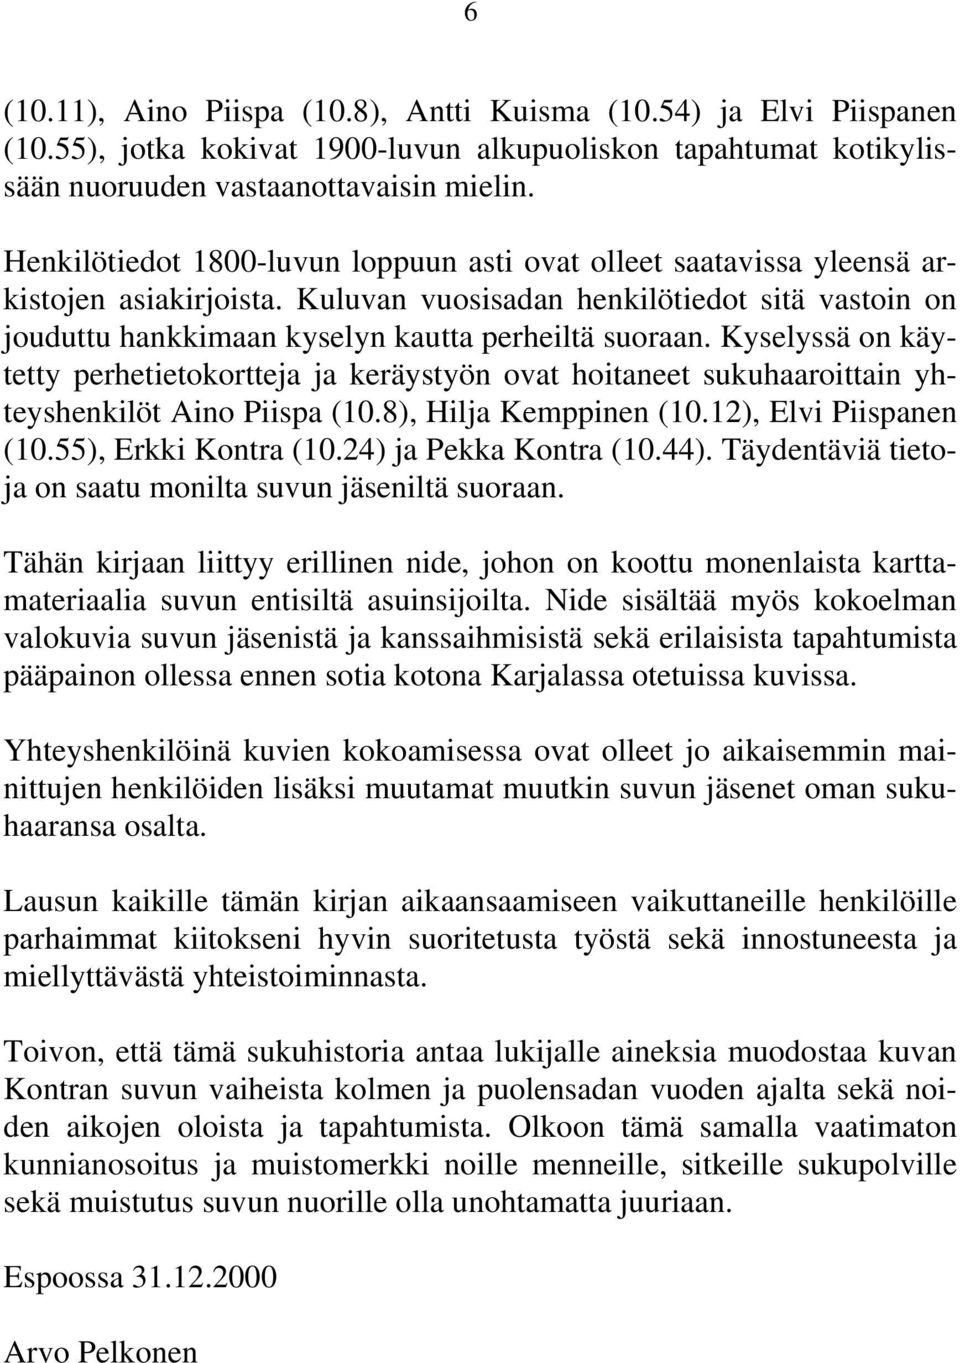 Kyselyssä on käytetty perhetietokortteja ja keräystyön ovat hoitaneet sukuhaaroittain yhteyshenkilöt Aino Piispa (10.8), Hilja Kemppinen (10.12), Elvi Piispanen (10.55), Erkki Kontra (10.